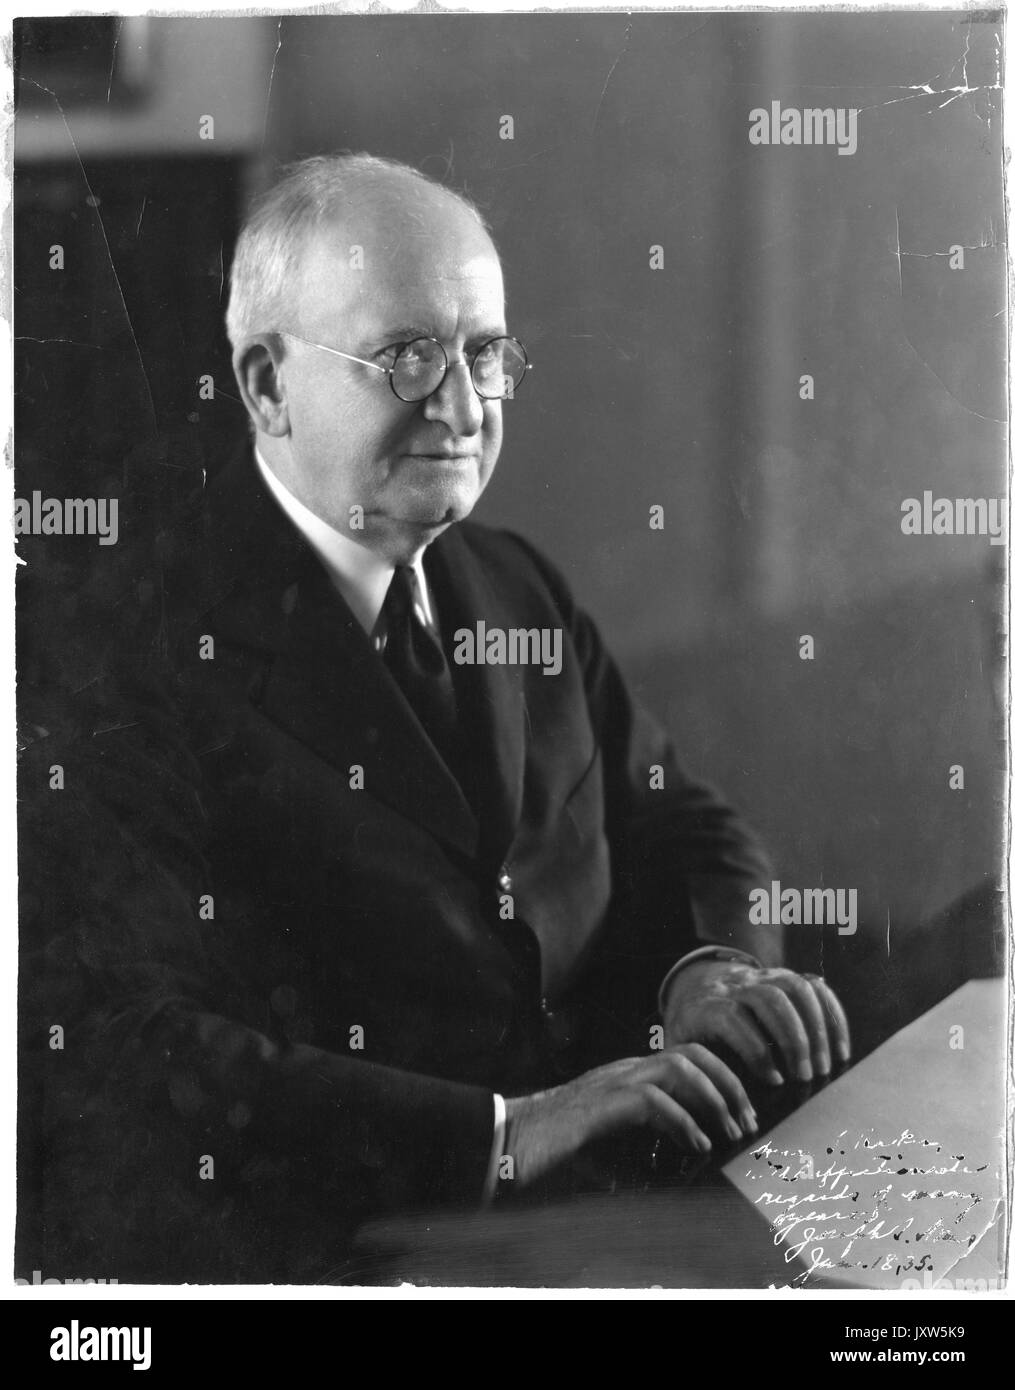 Joseph sweetman Ames, unterzeichnet, Bären eingeschrieben Datum 18. Januar 1935, 1935. Stockfoto